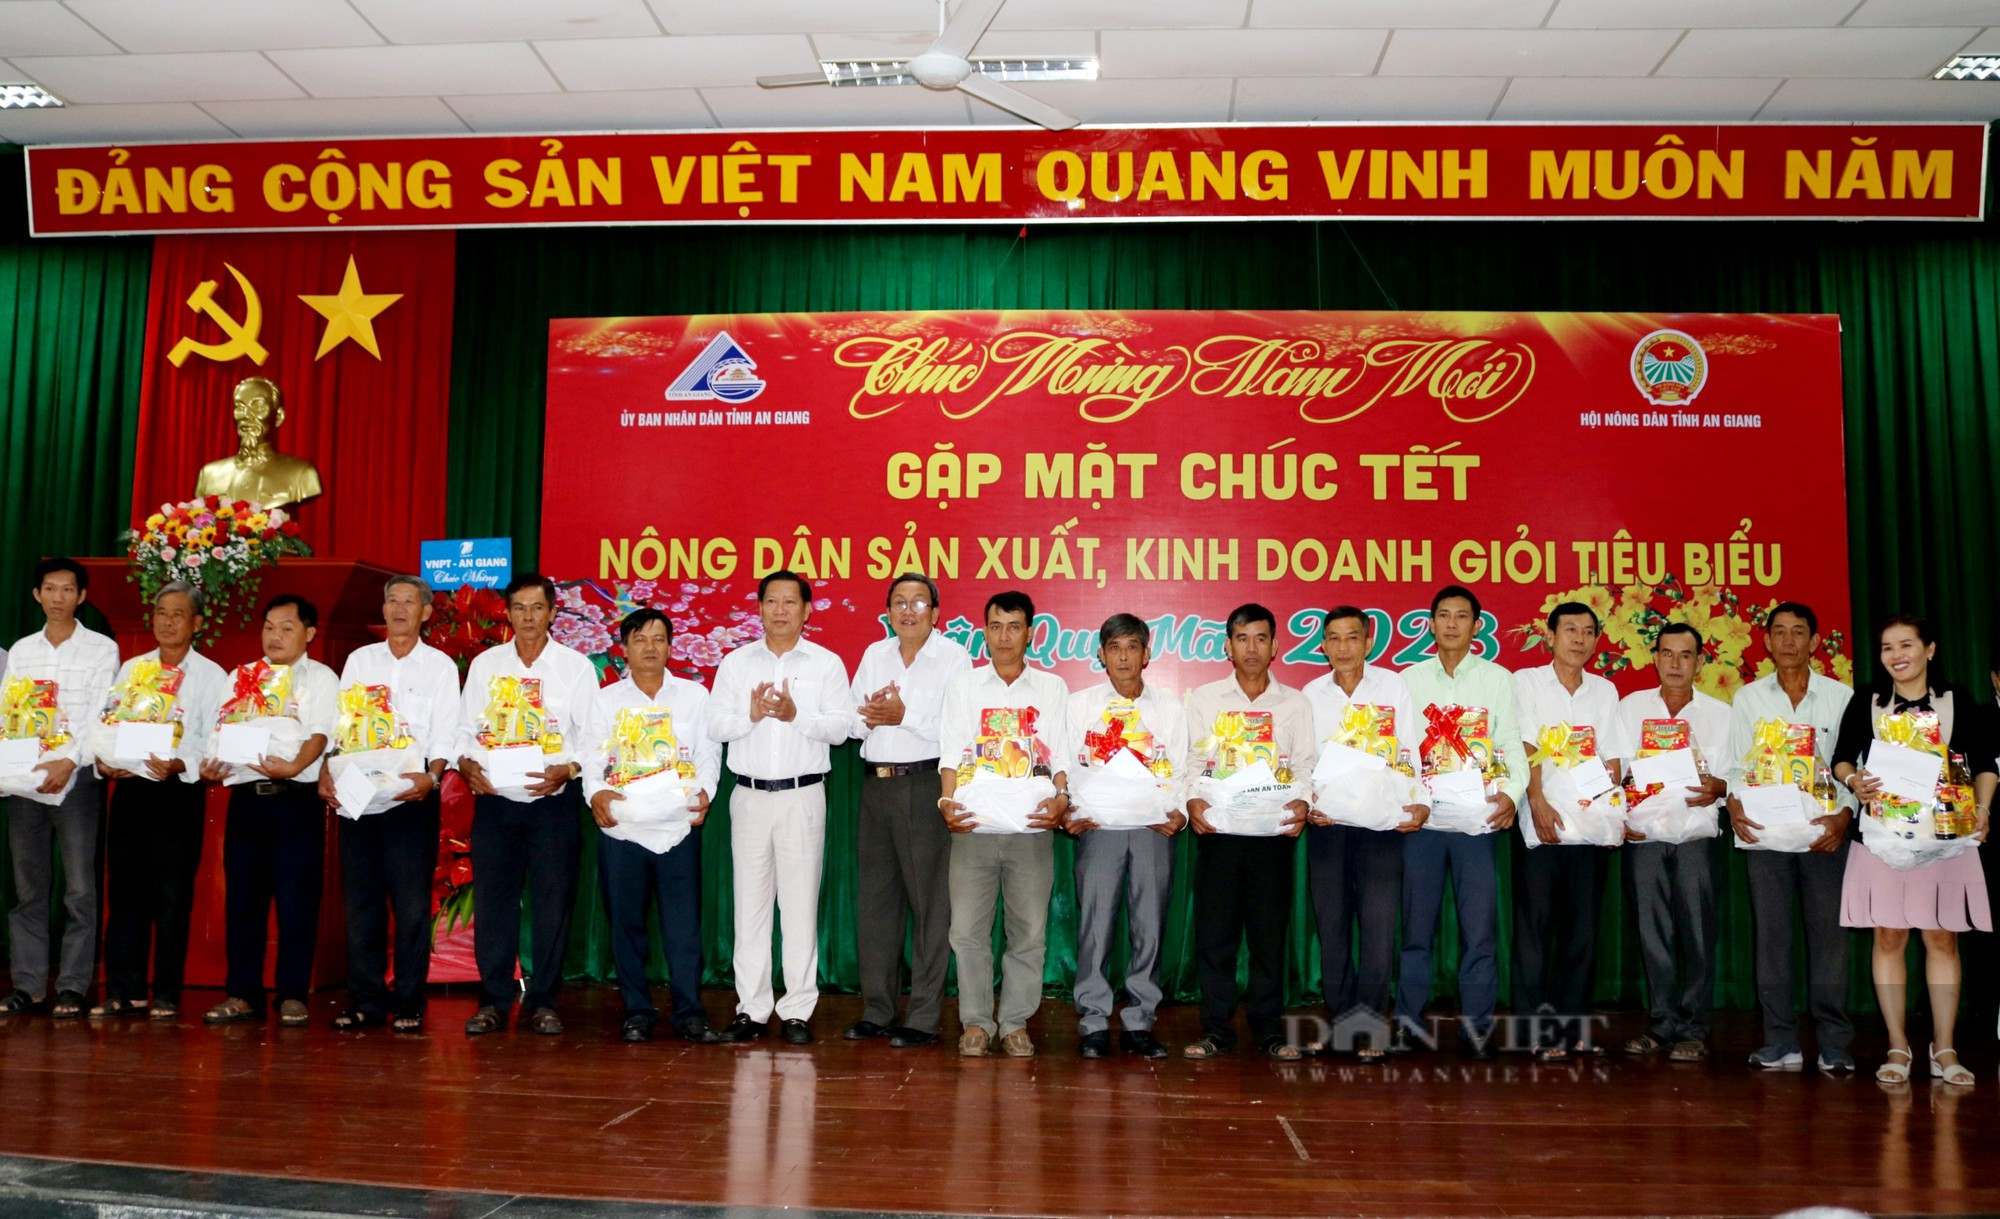 Tỉnh Giang Giang họp mặt chúc Tết nông dân sản xuất, kinh doanh tiêu biểu năm 2022 - Ảnh 4.